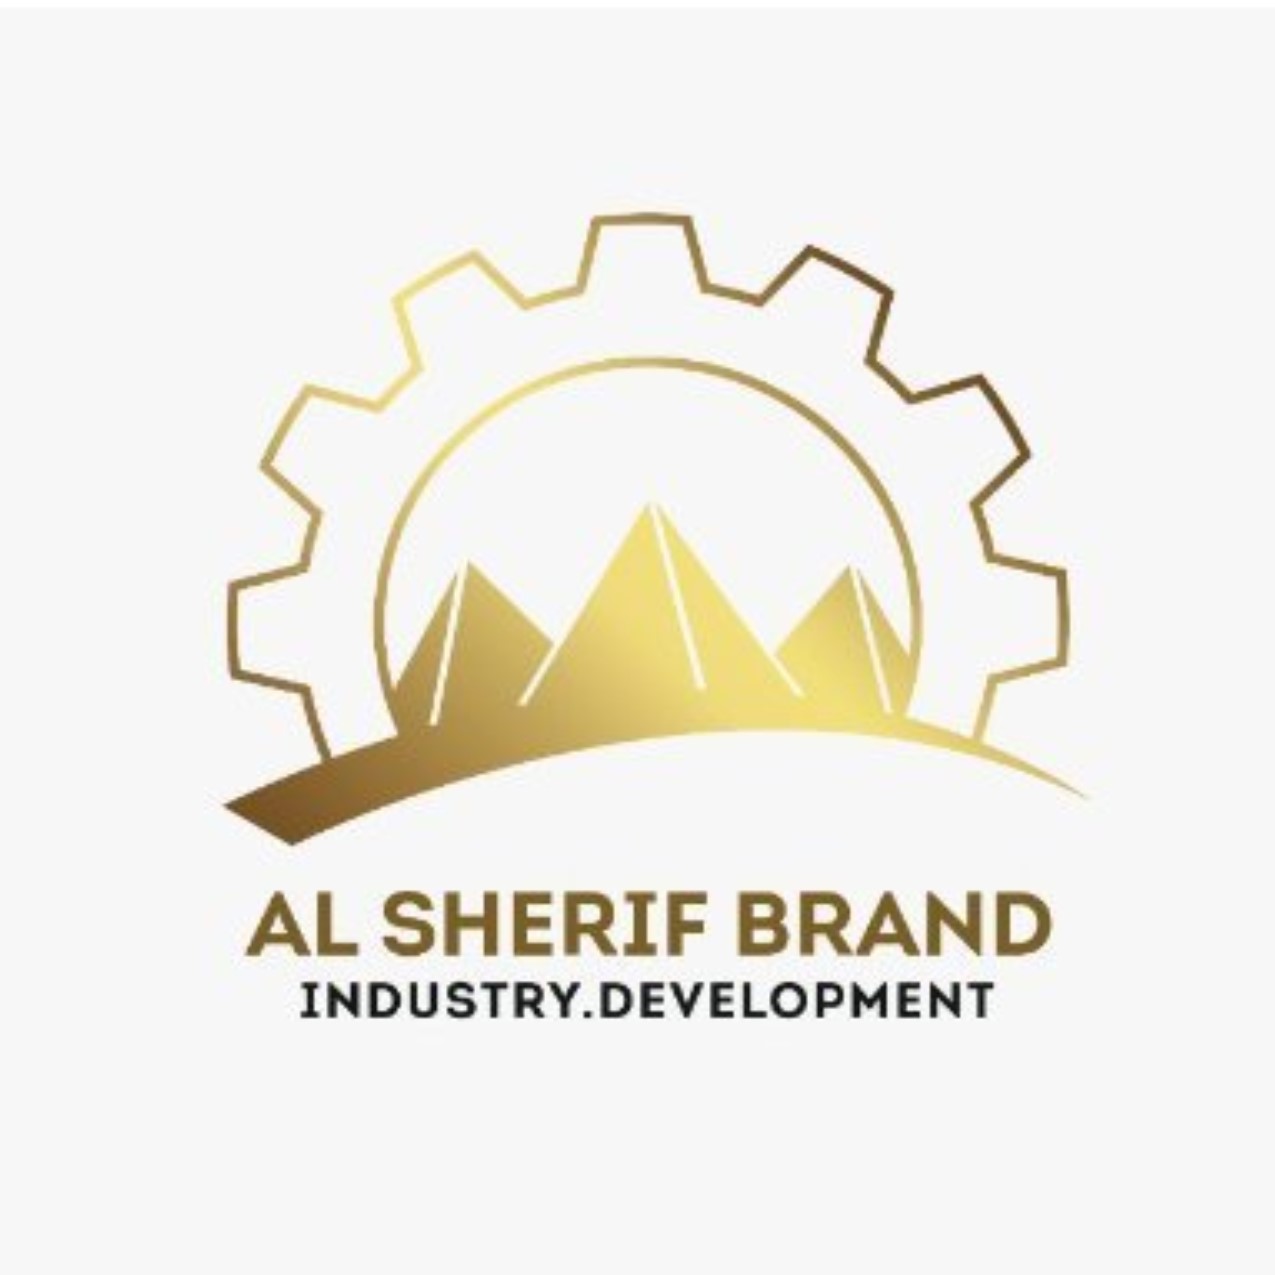 Al-Sherif brands